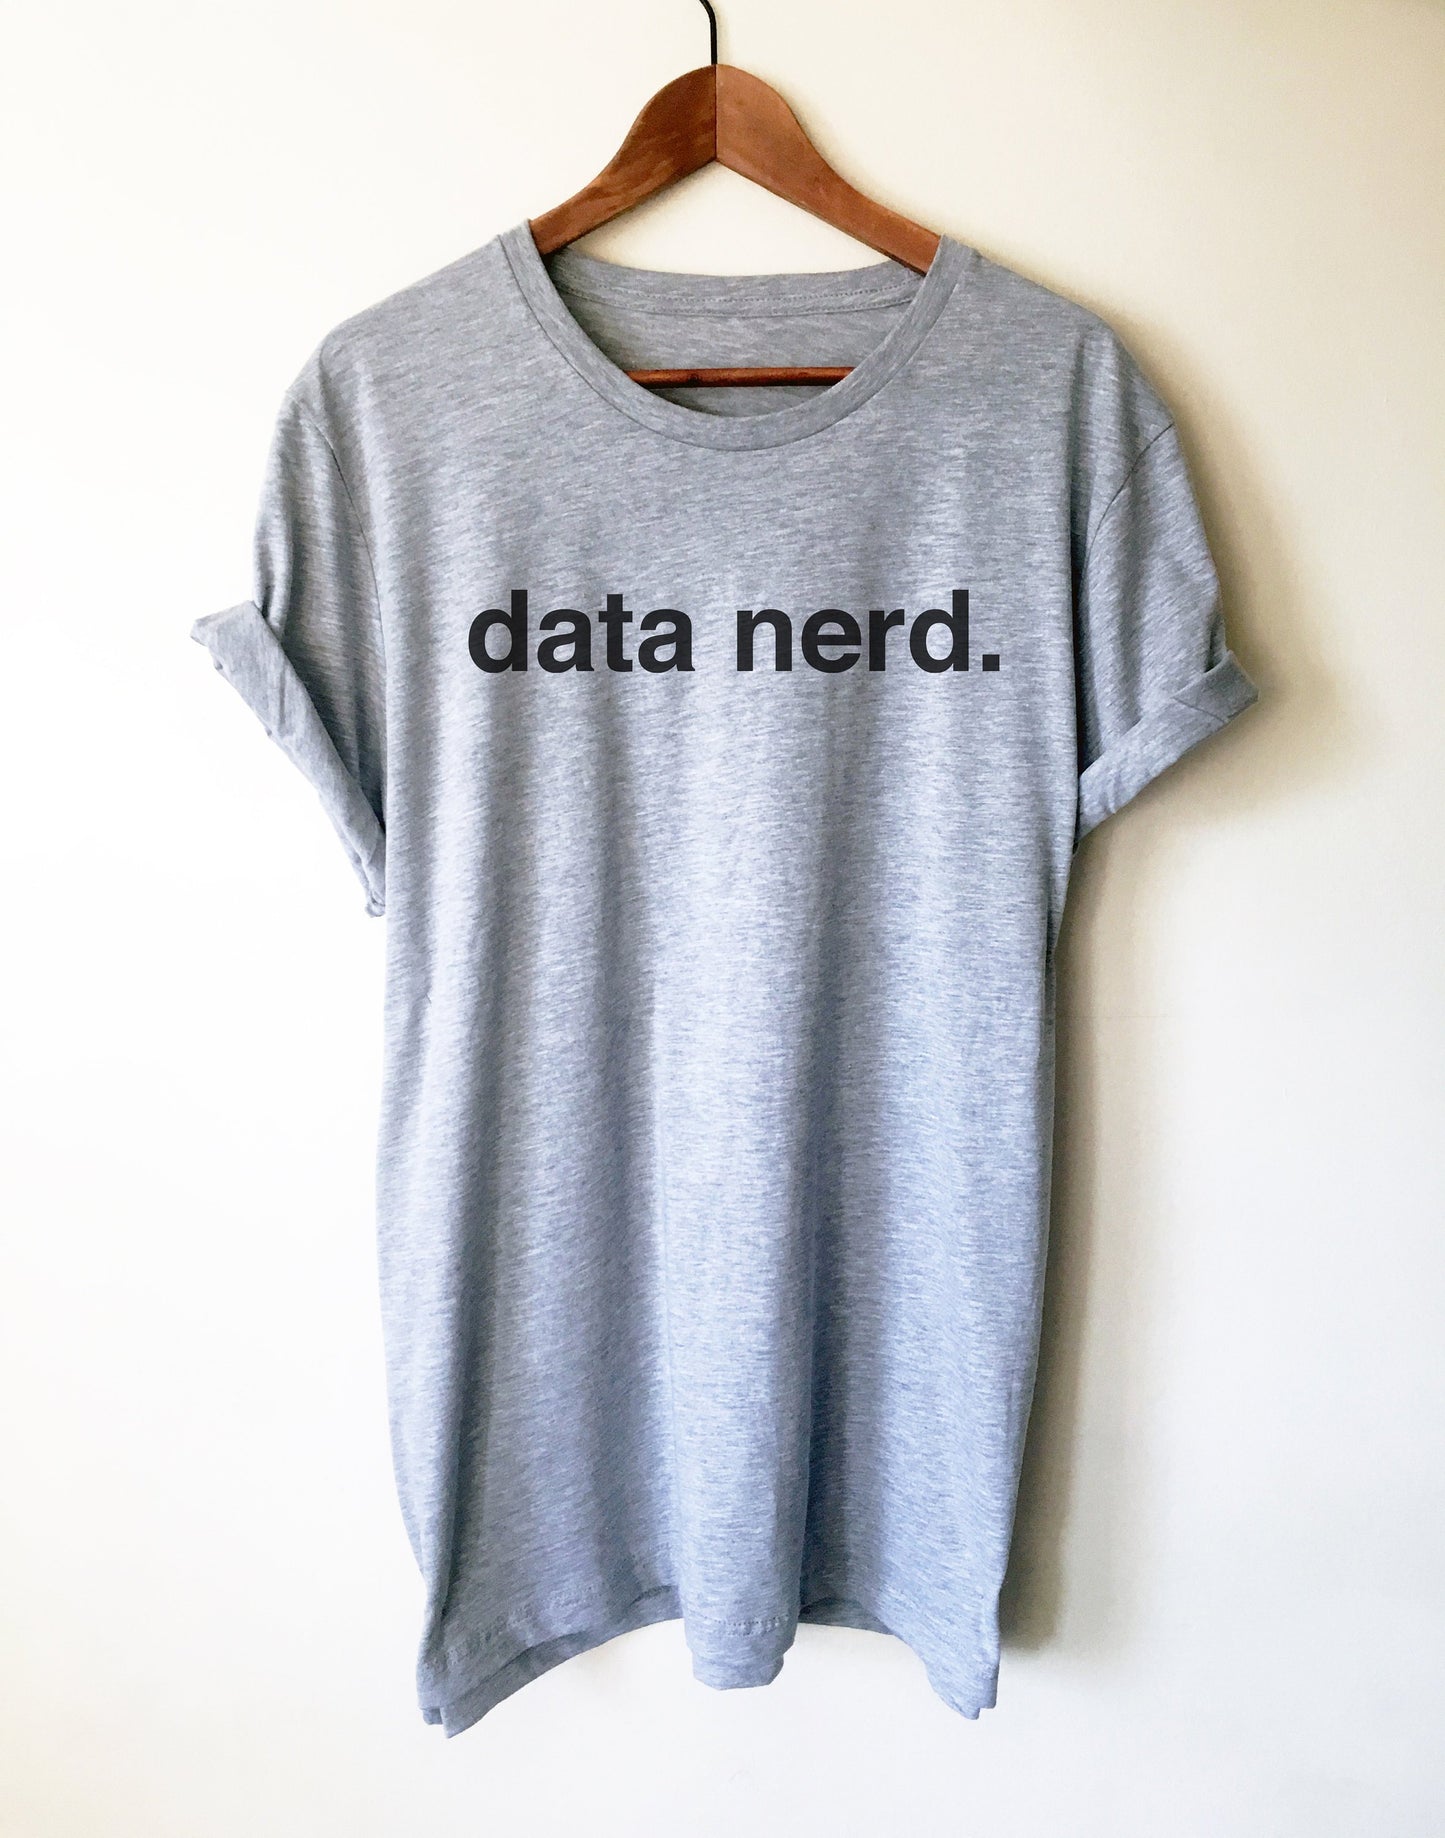 Data Nerd Unisex Shirt - Data Analyst Shirt, Data Analyst Gift, Analyst Shirt, Data Scientist Gift, Computer Science Gift, Nerd Shirt